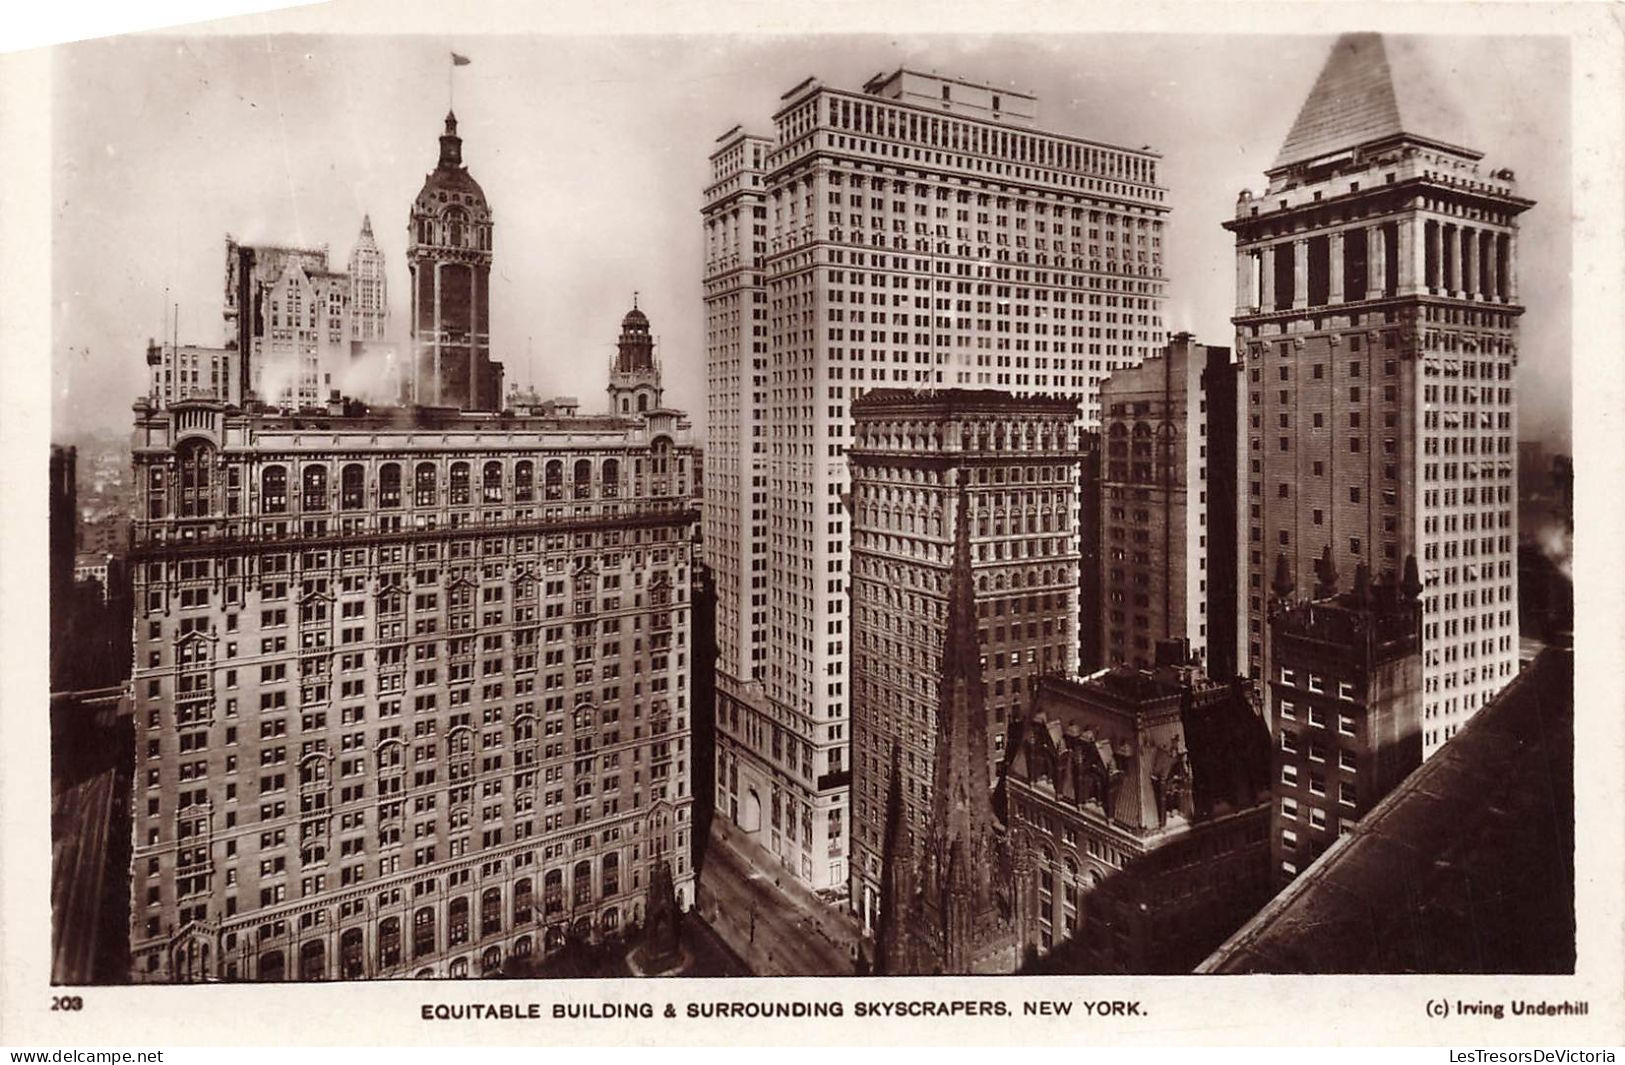 ETATS-UNIS - Equitable Building & Surrounding Skyscrapers - New York - Vue Générale - Carte Postale Ancienne - Andere Monumente & Gebäude